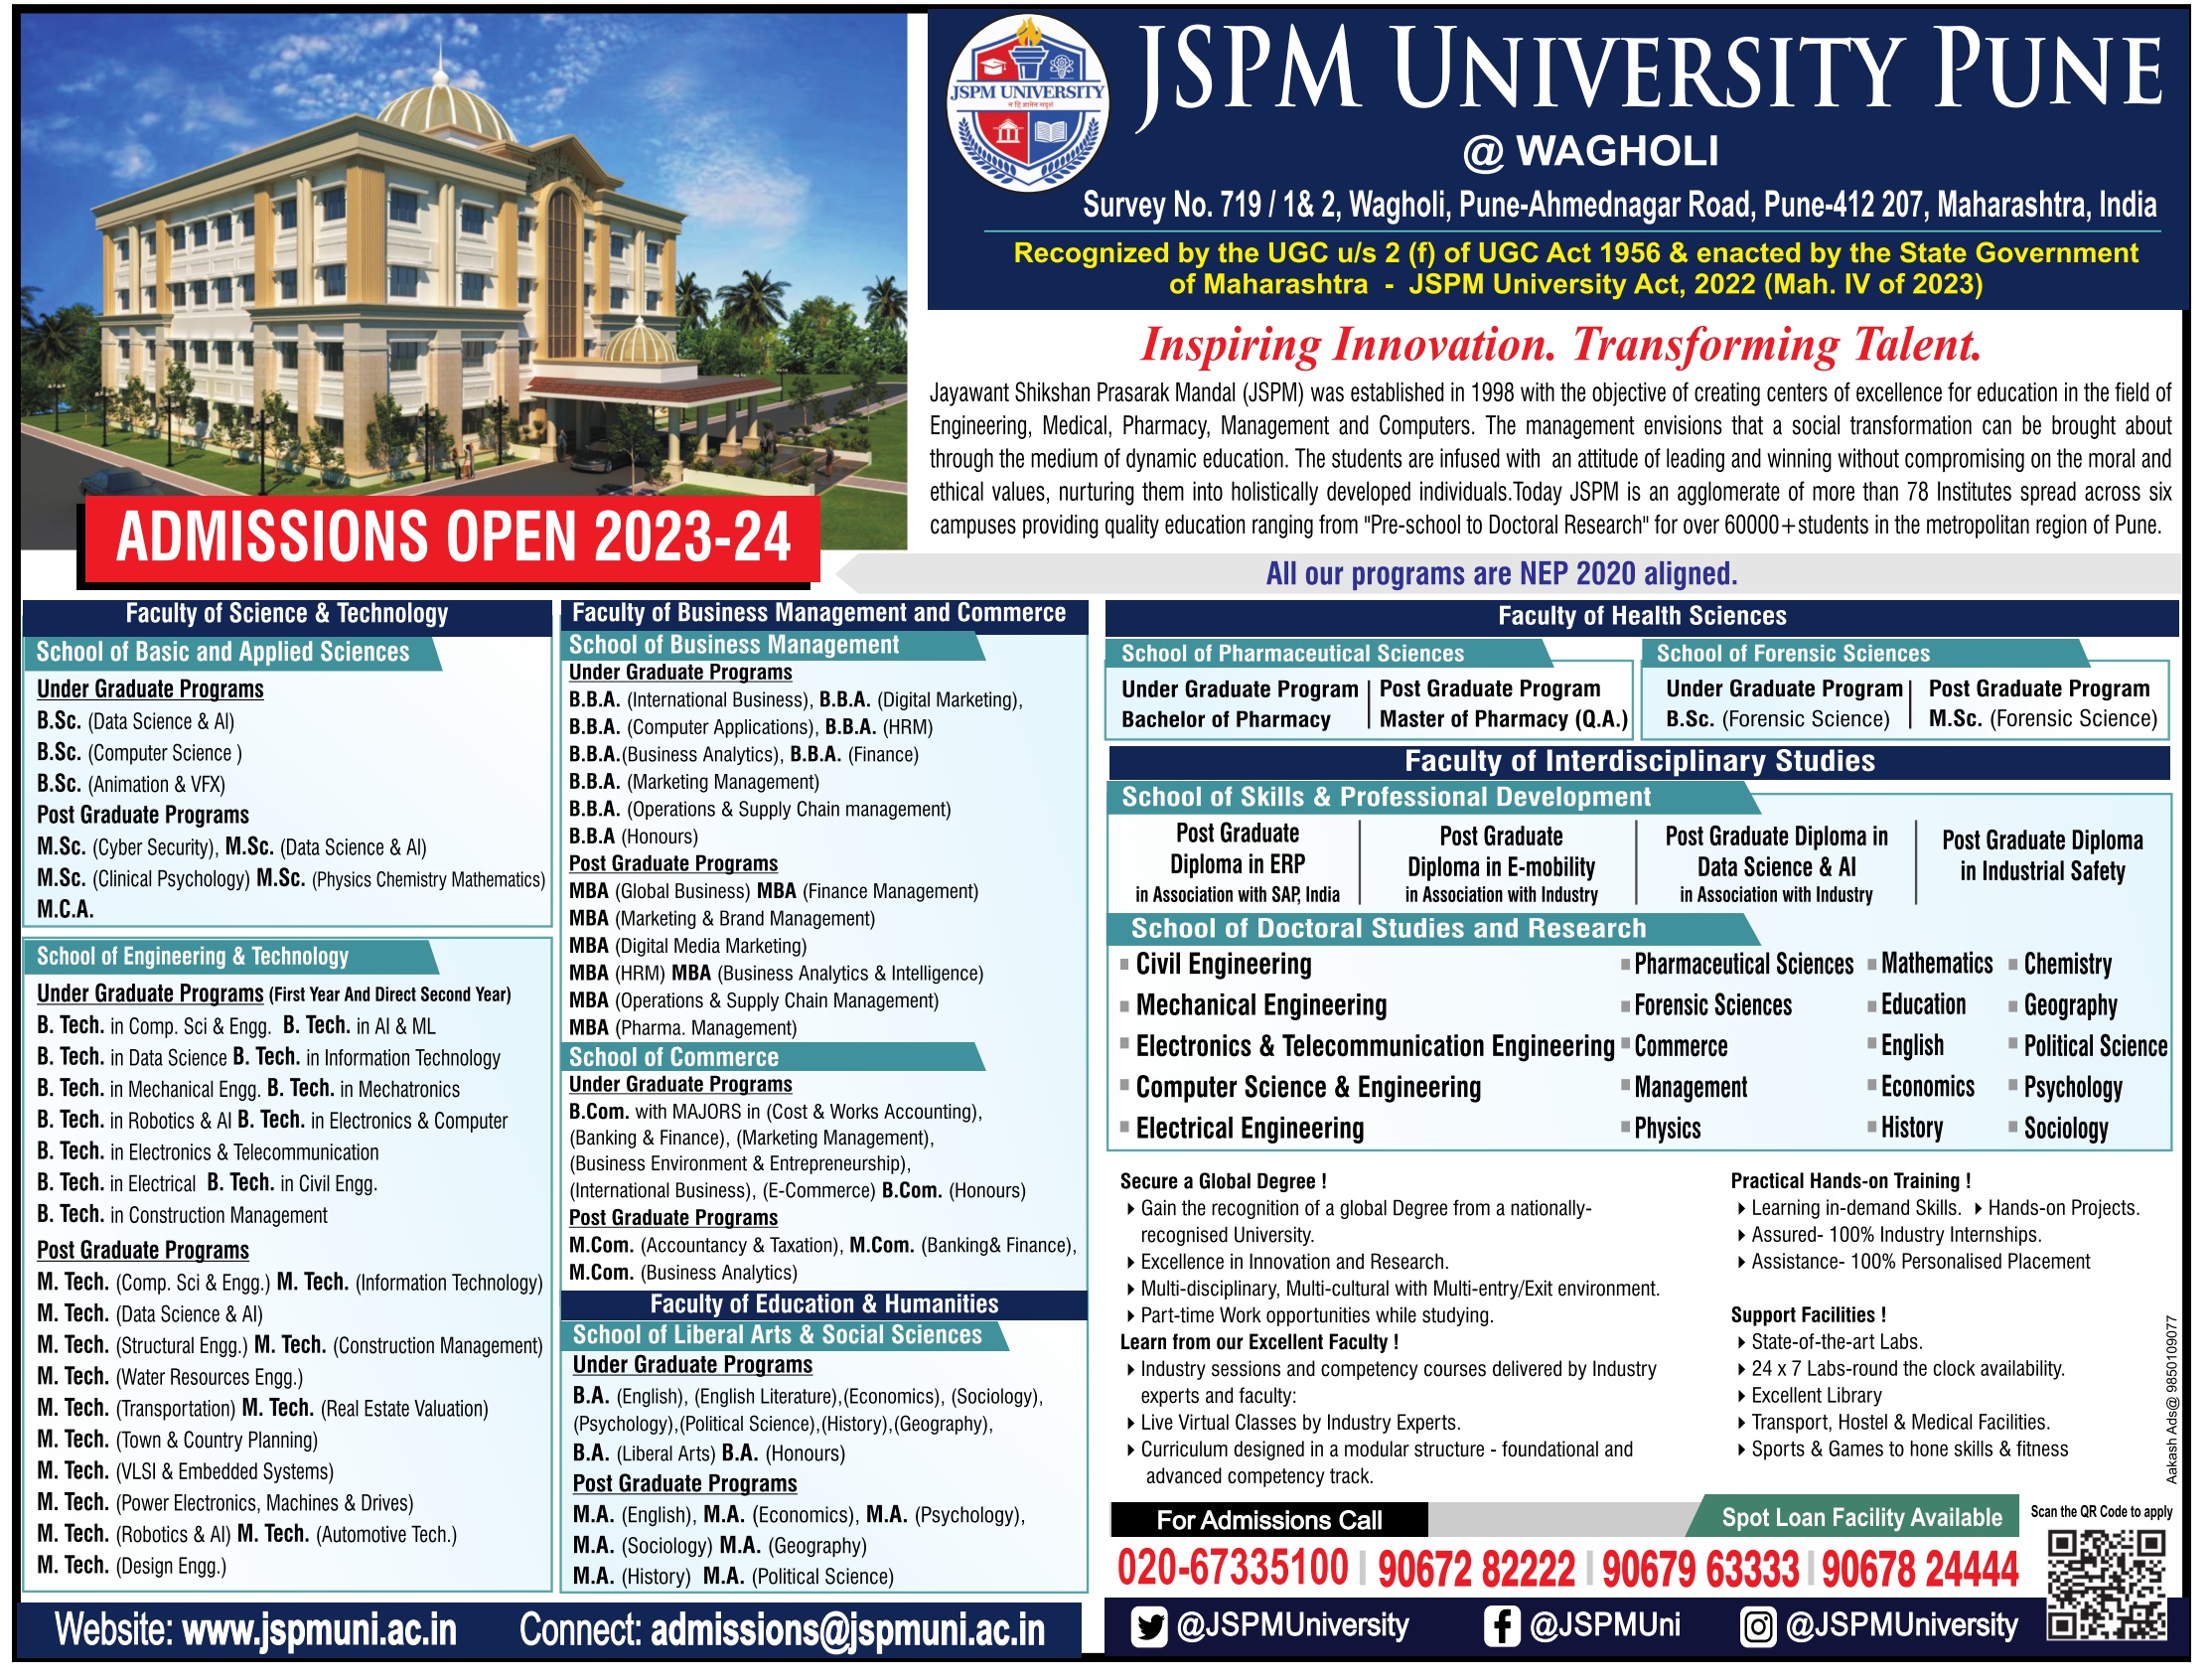 jspm-university-pune-wagholi-admissions-open-ad-times-of-india-mumbai-10-07-2023